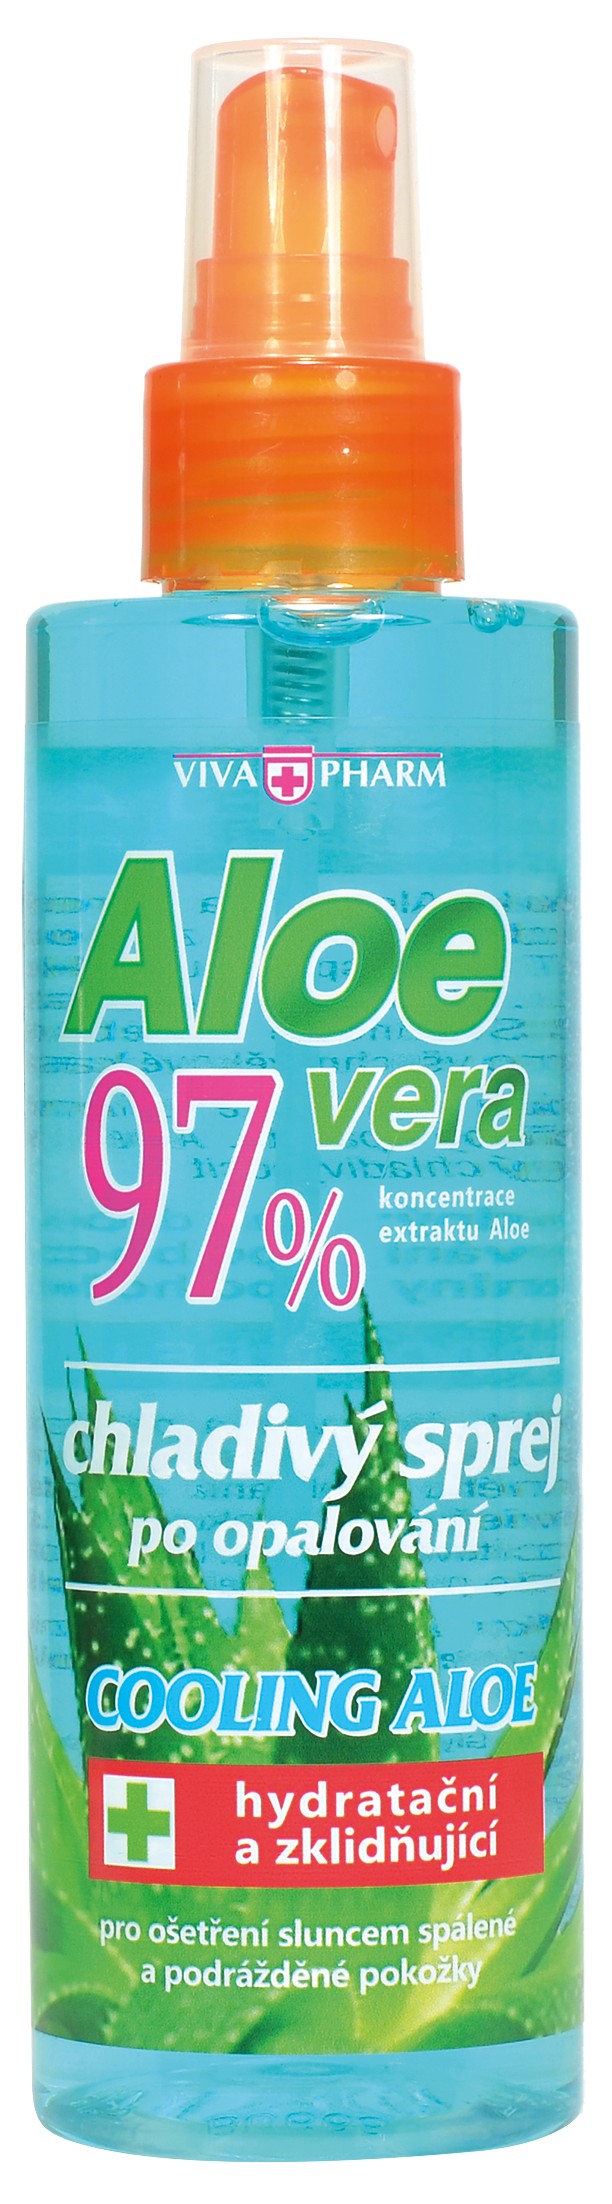 Zobrazit detail výrobku Vivaco Aloe Vera 97% chladivý sprej po opalování 200 ml